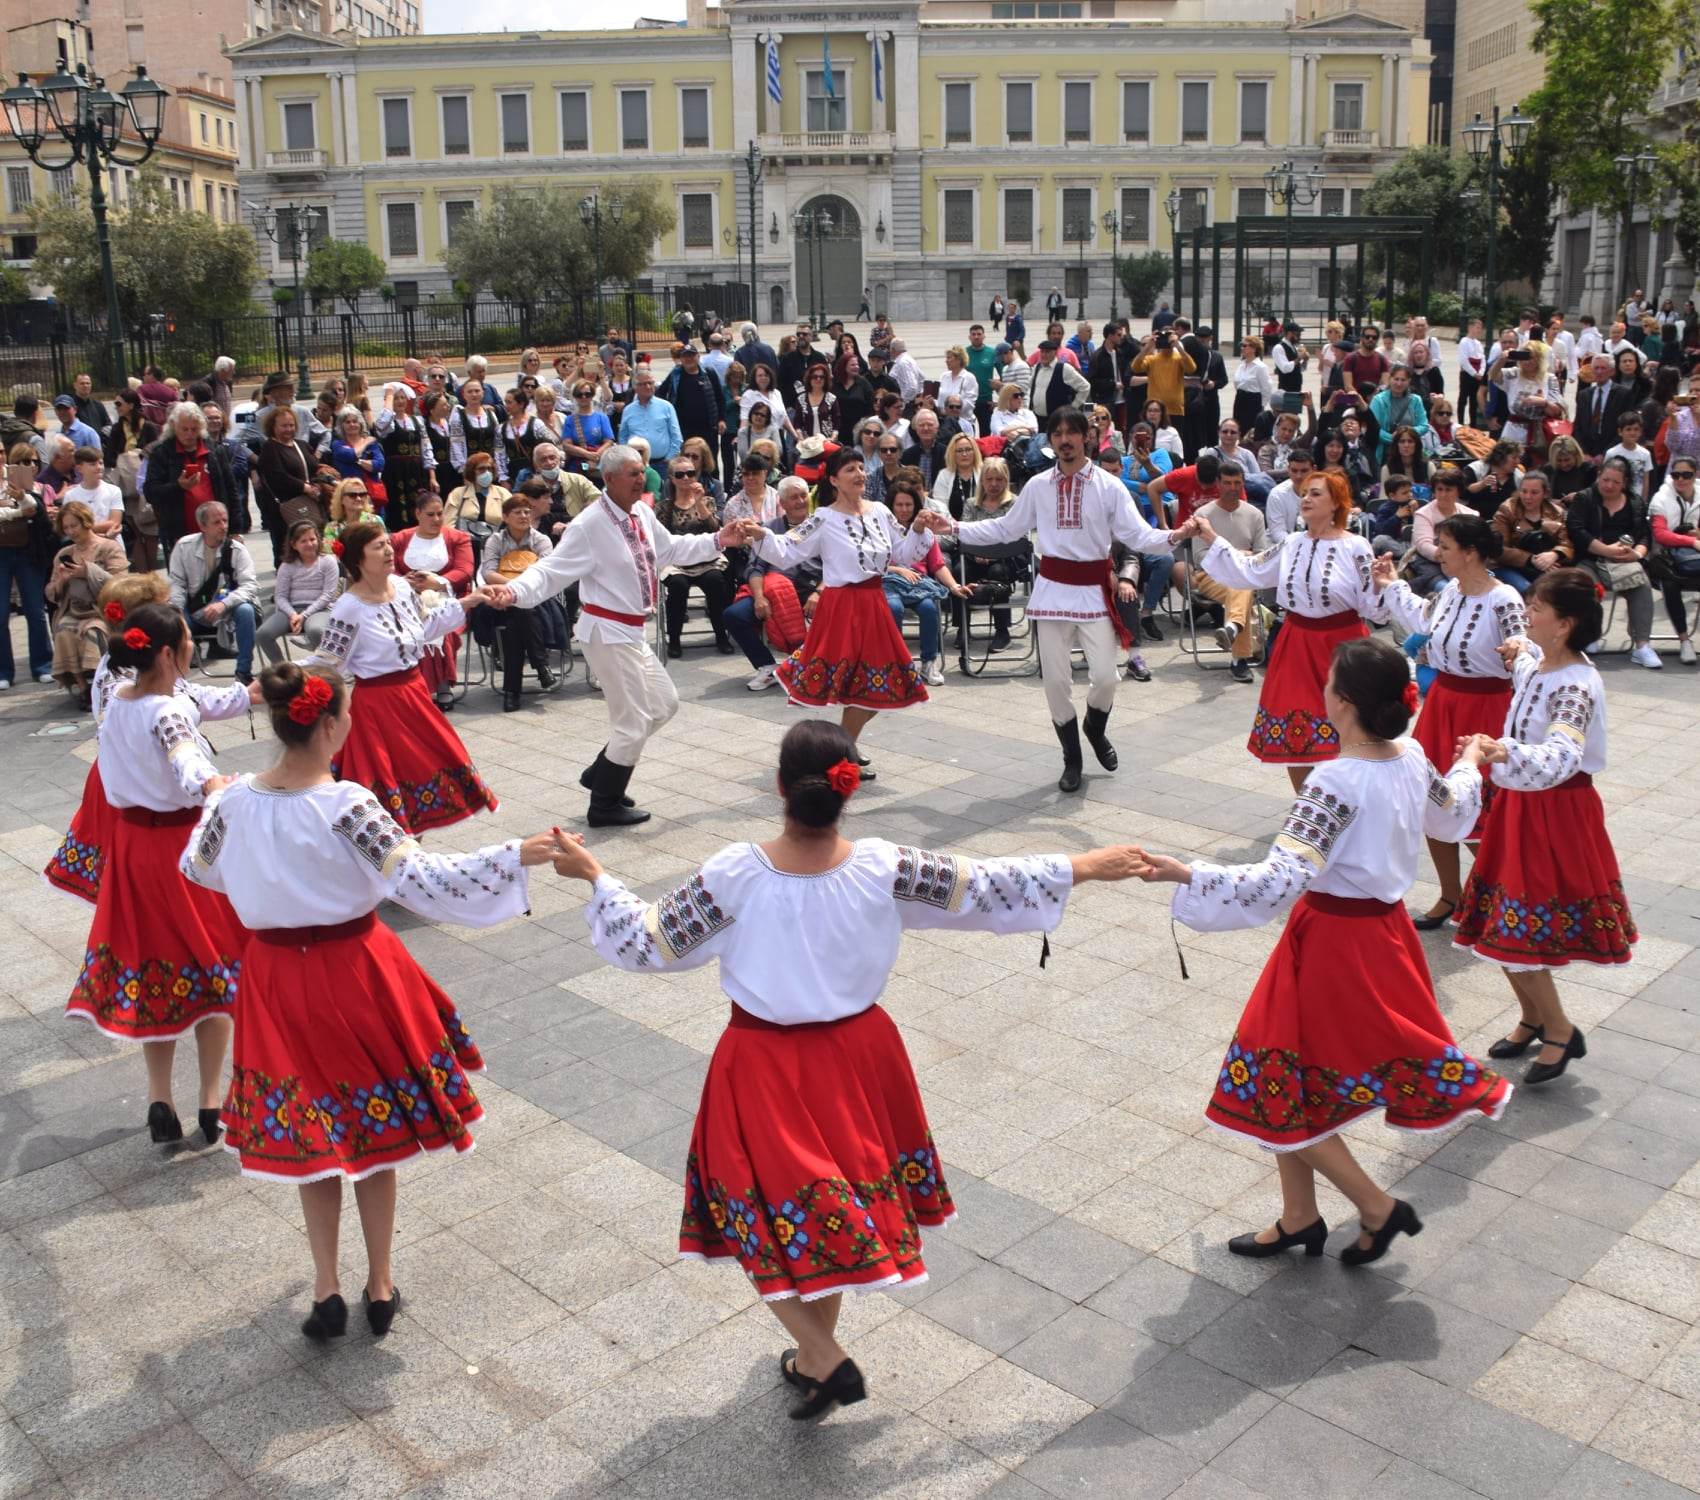 Ziua Internațională a Dansului, marcată prin dans de către diaspora din Grecia